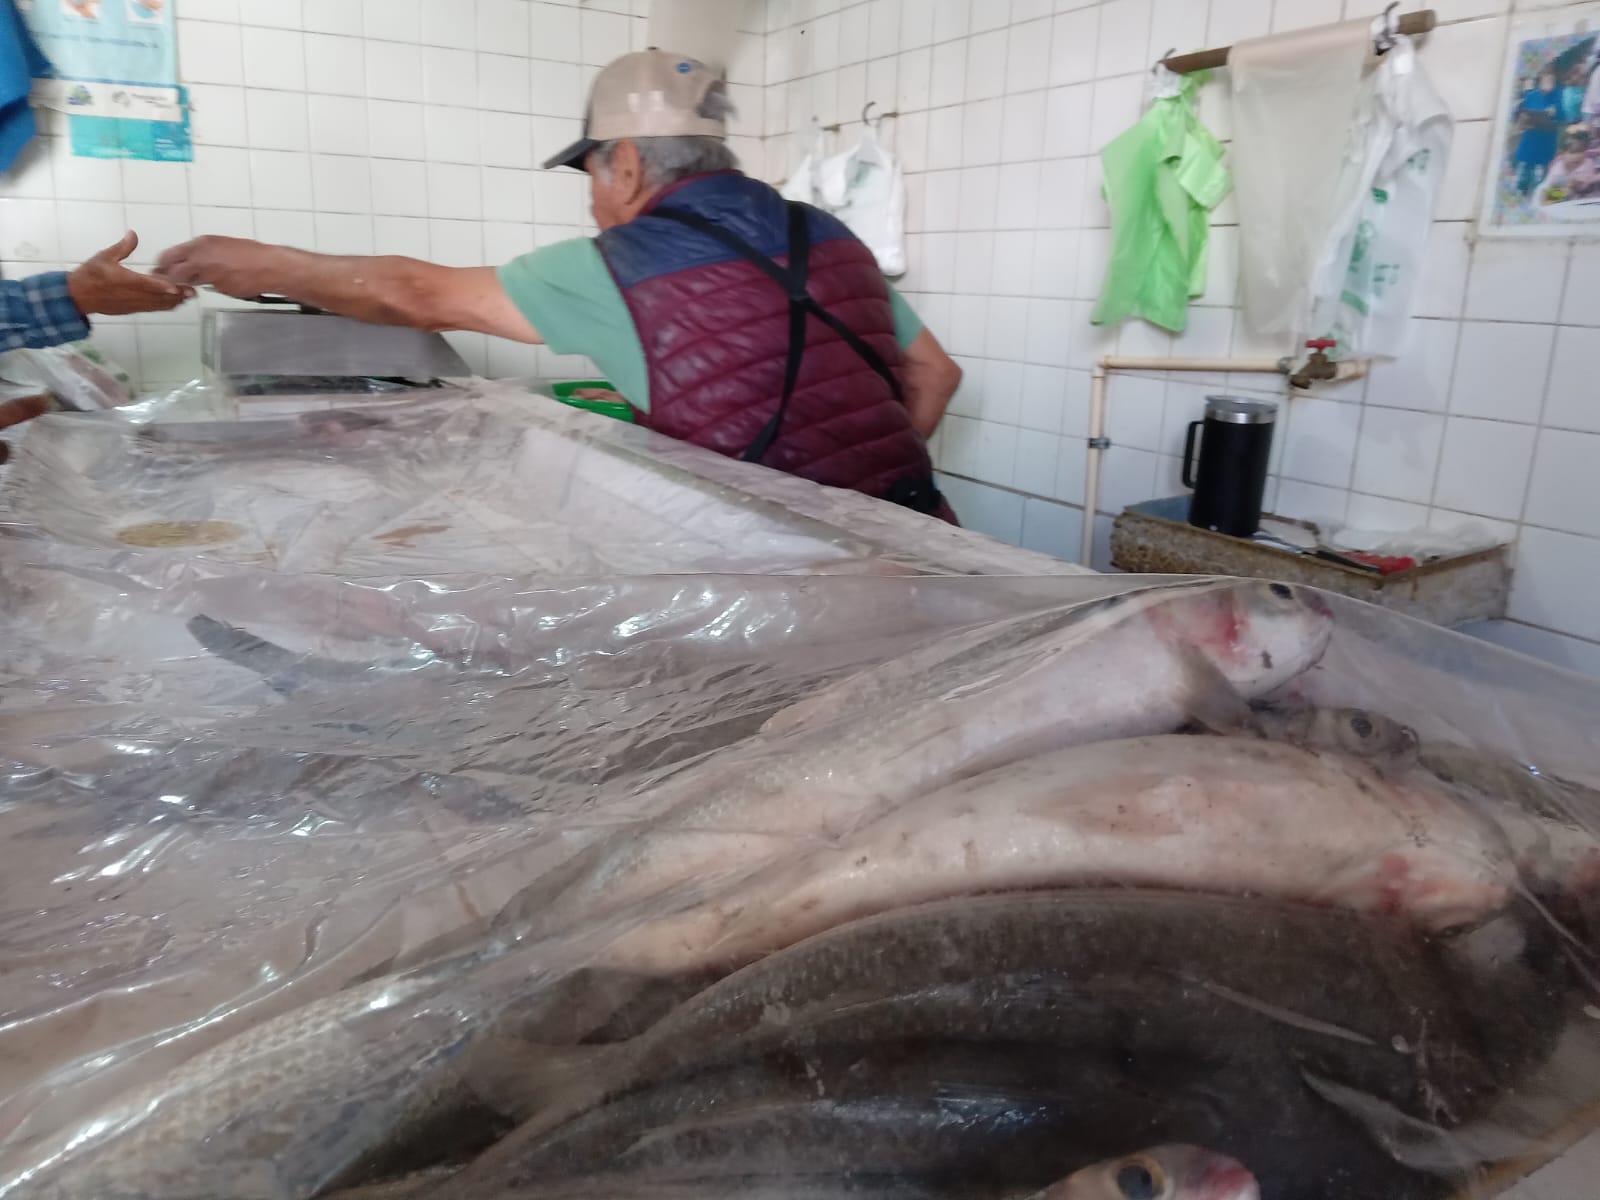 $!En Rosario, ventas de pescado repuntan solo en días santos